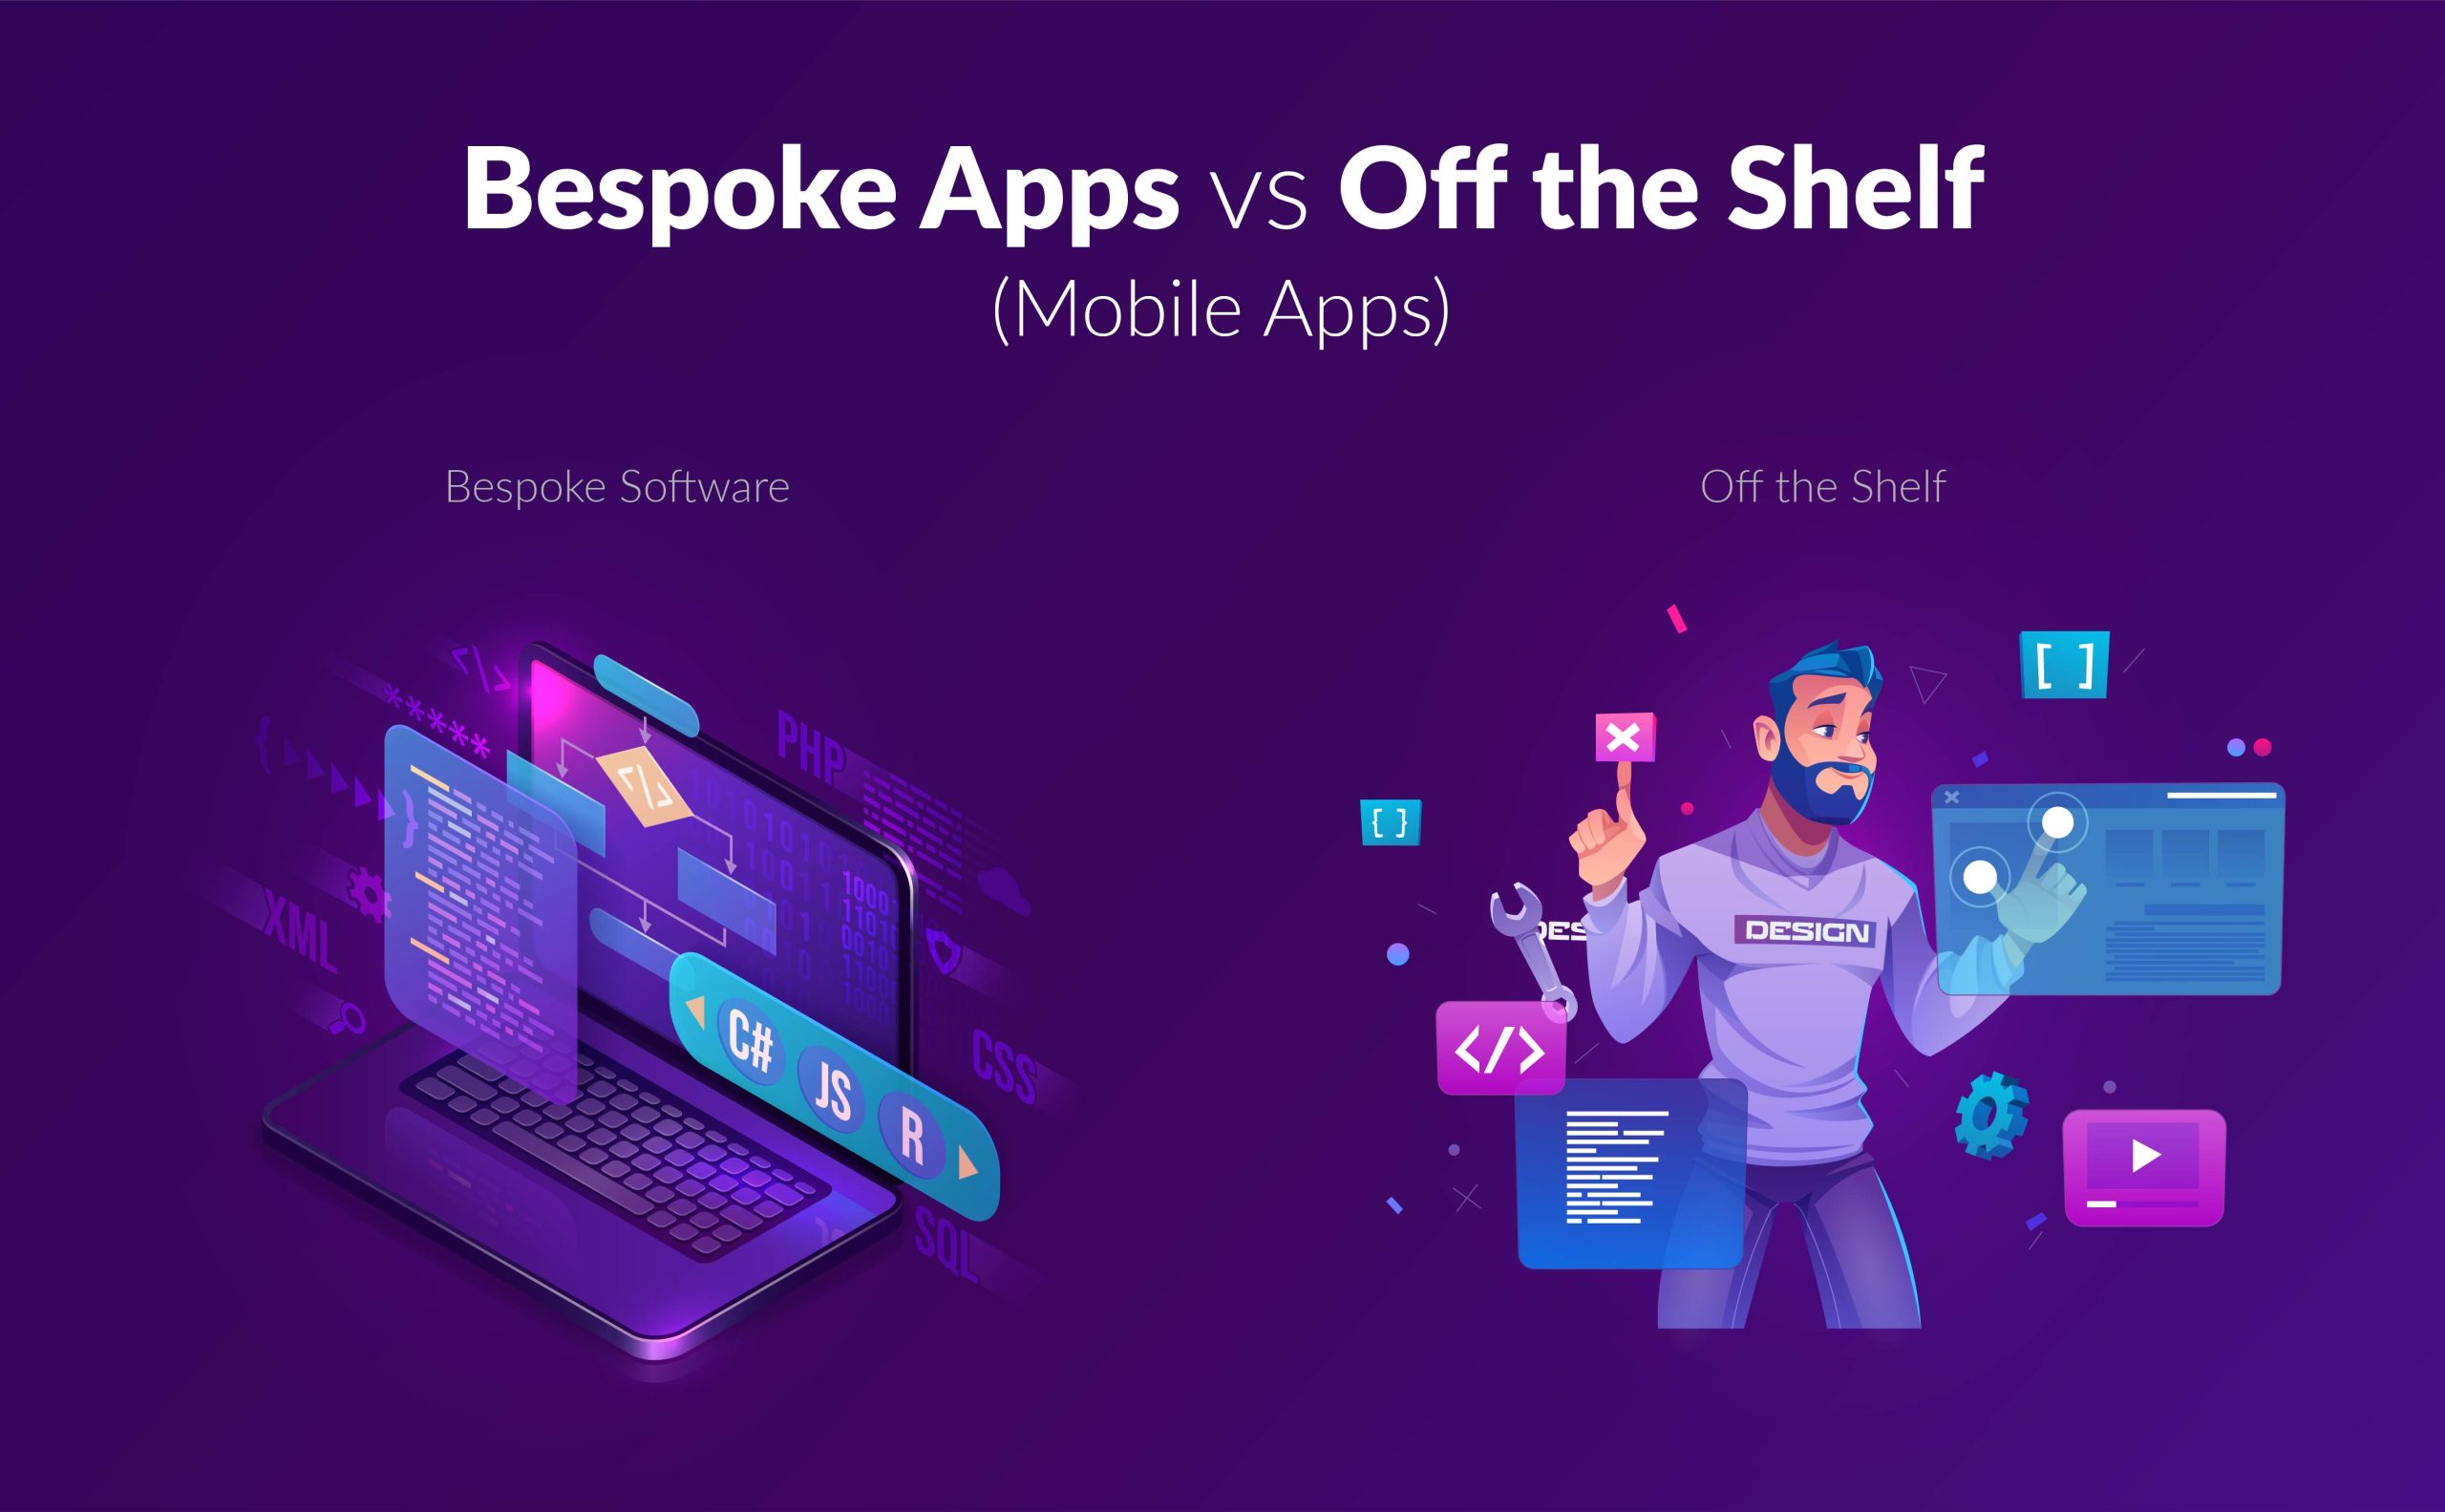 Bespoke Apps vs Off the Shelf Mobile Apps